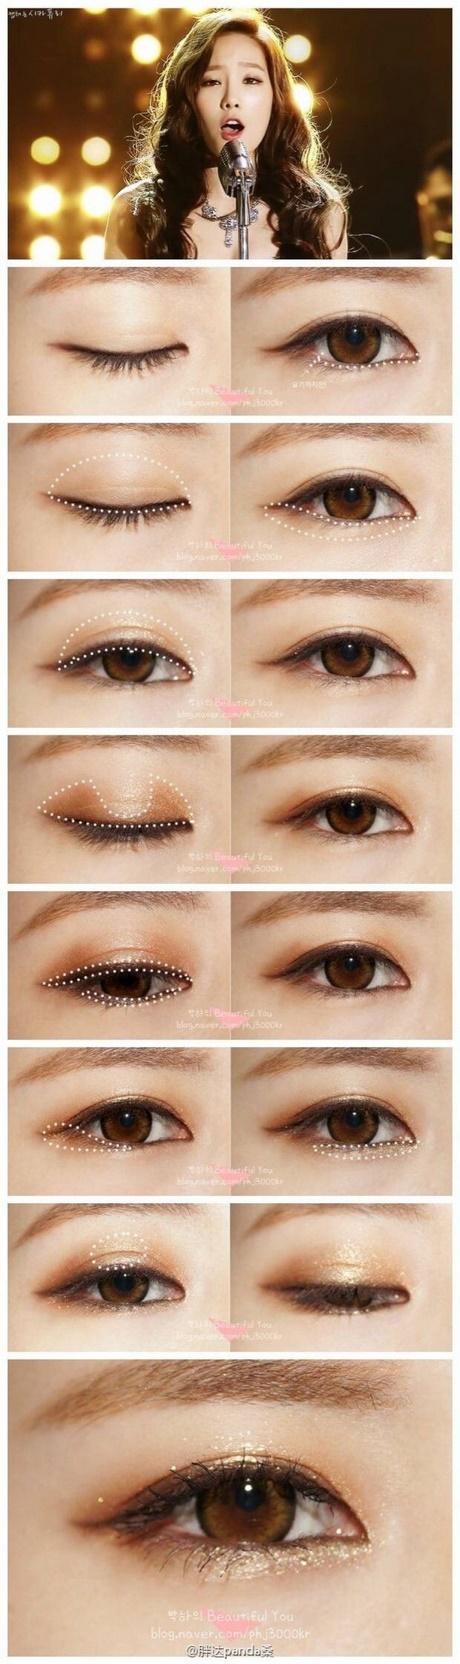 asian-makeup-artist-tutorial-50_10 Les voor Aziatische make-upartiesten